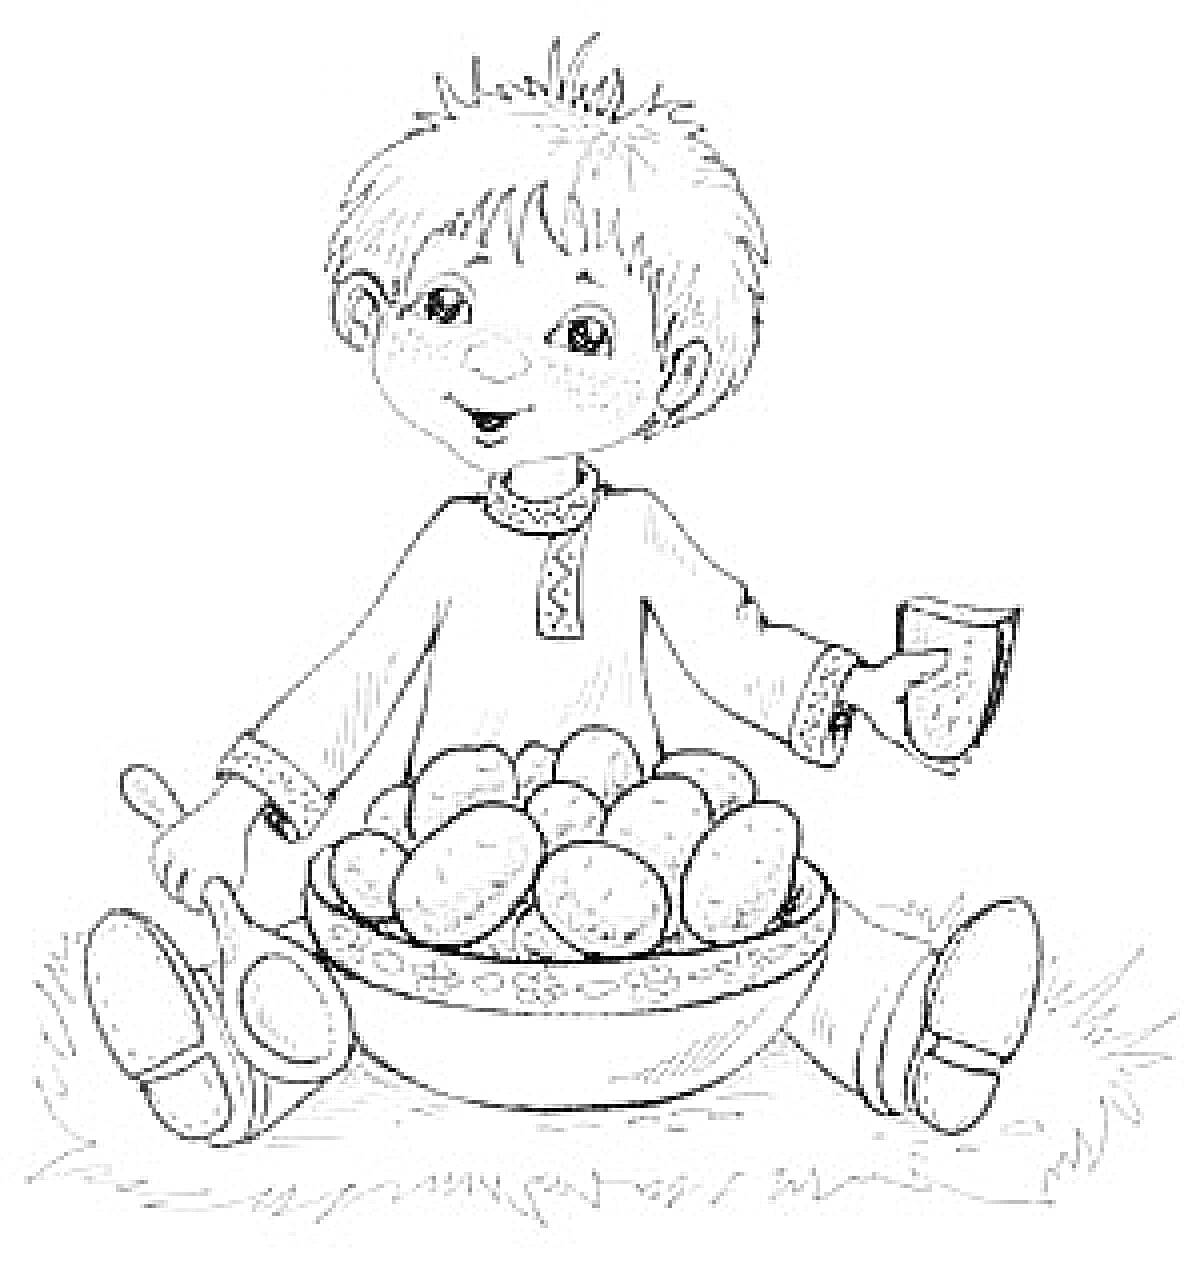 Мальчик в традиционной рубашке, держащий хлеб, с чашкой и ложкой, сидит перед миской картошки